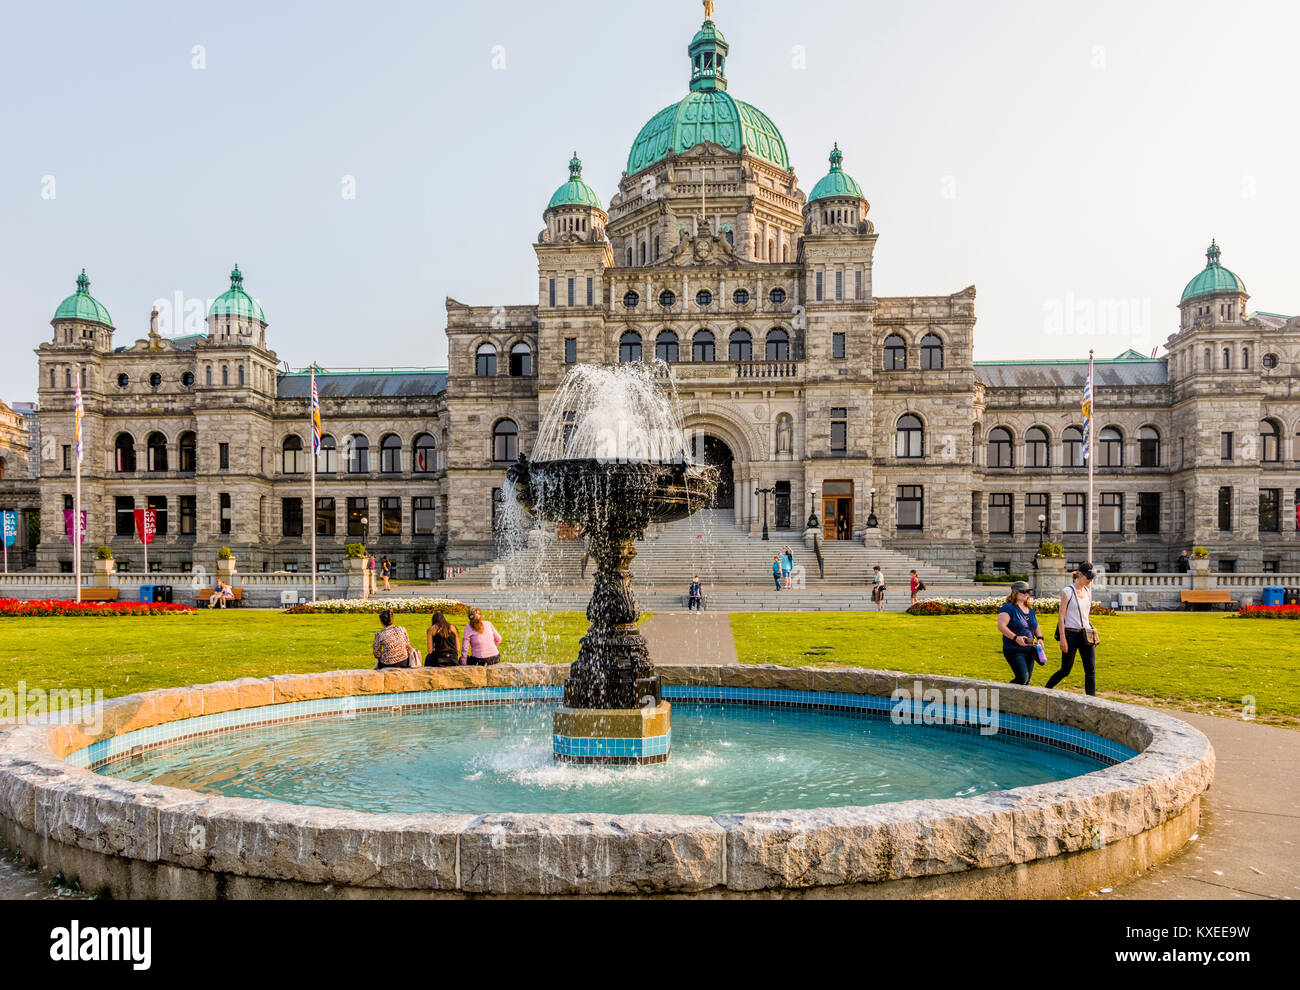 El edificio del parlamento de British Columbia en Victoria conocida como la Ciudad Jardín en la isla de Vancouver, en Columbia Británica, Canadá Foto de stock